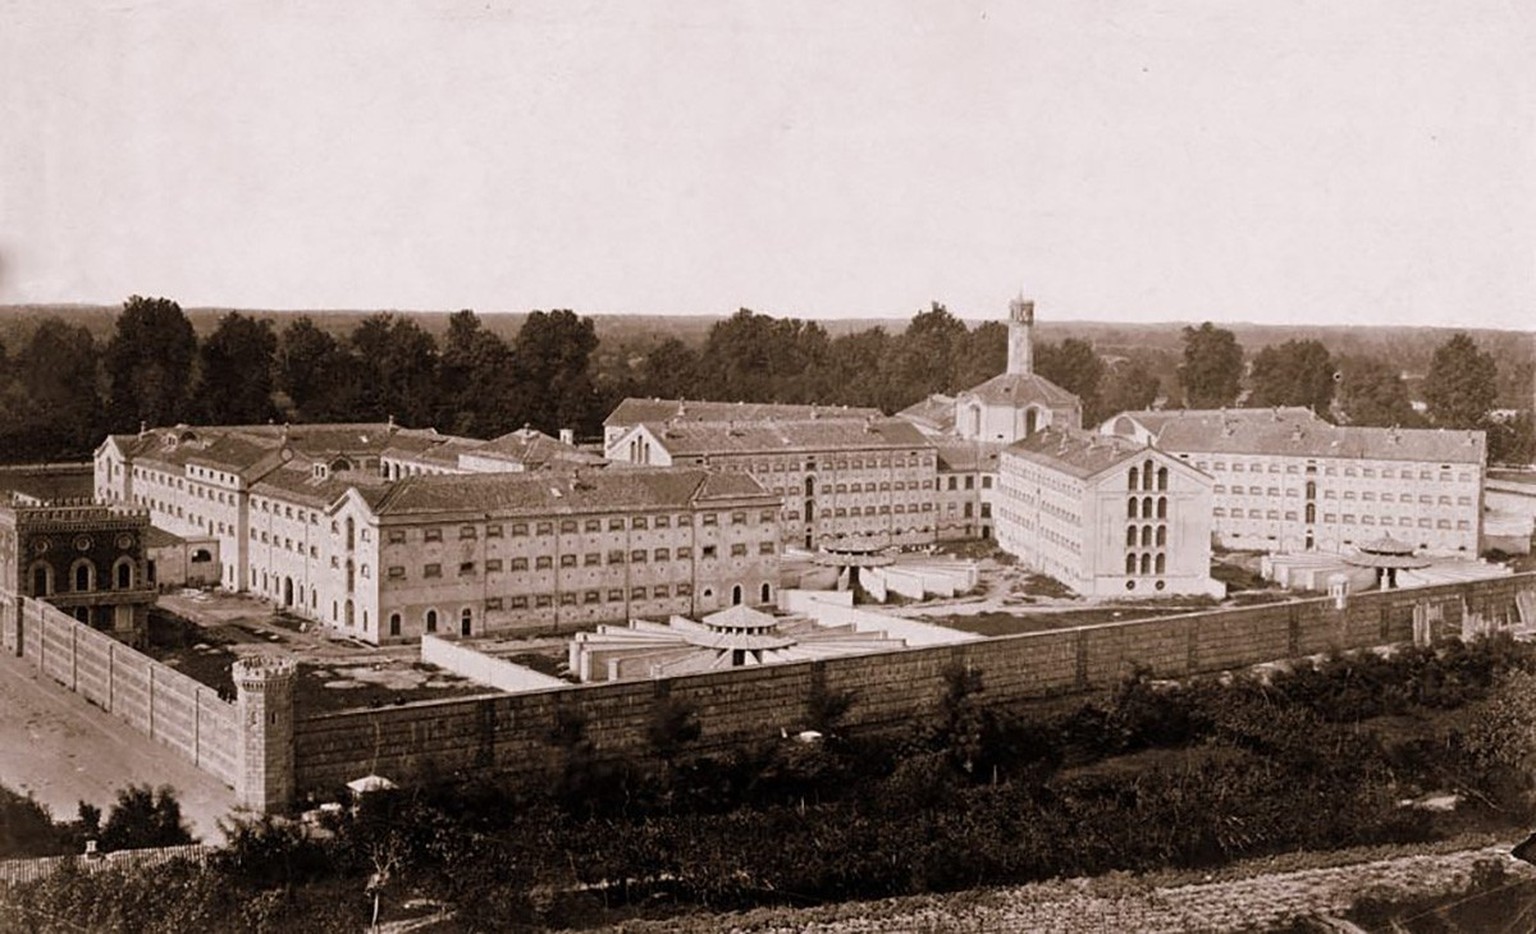 Das San-Vittore-Gefängnis auf einer Aufnahme um 1880.
https://commons.wikimedia.org/wiki/File:Carcere_s-vittore_1880.jpg